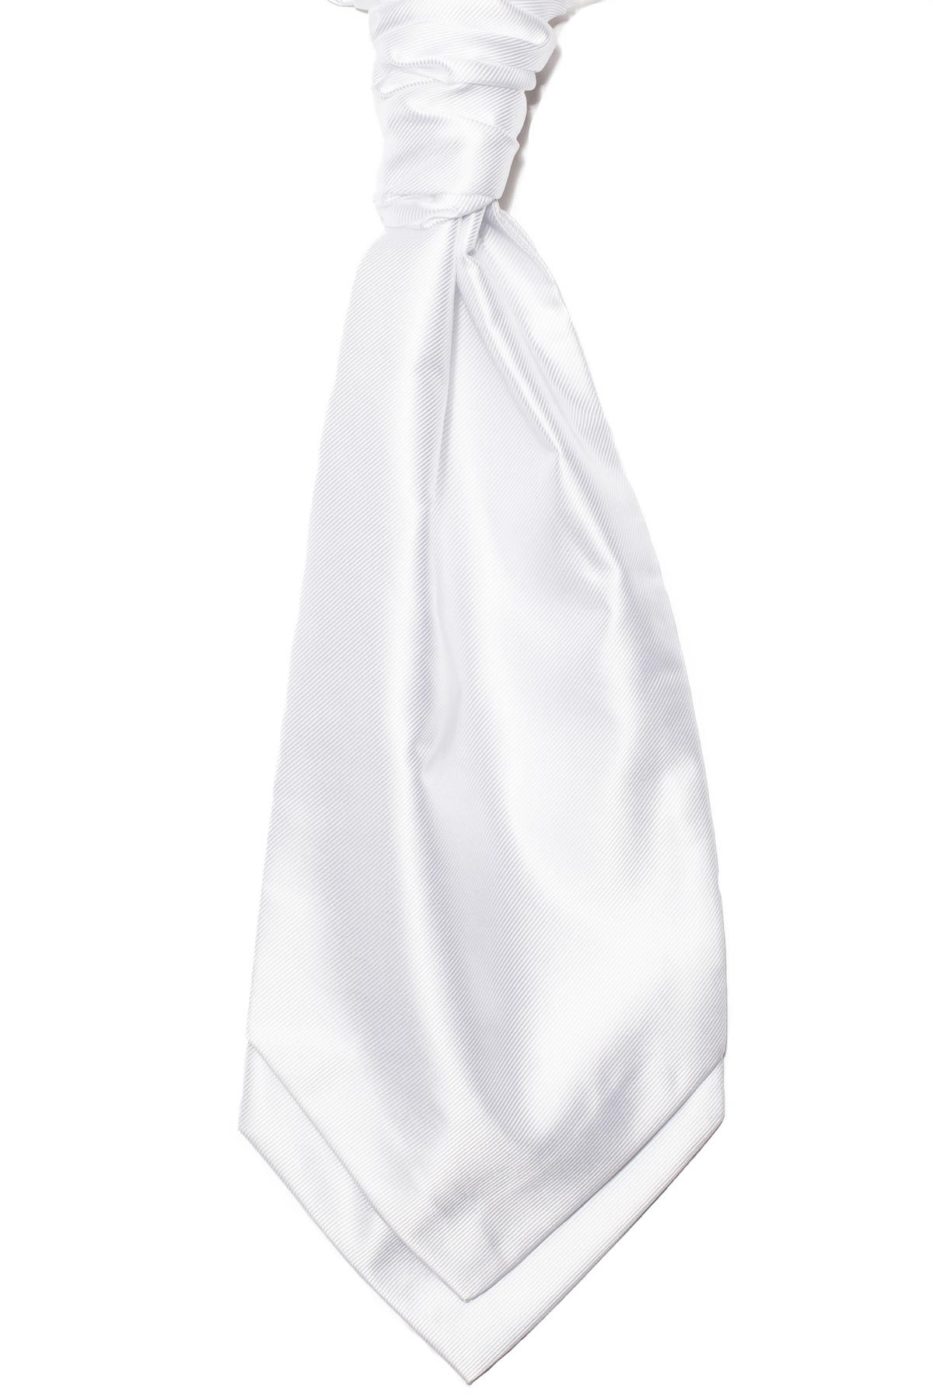 White Cravat